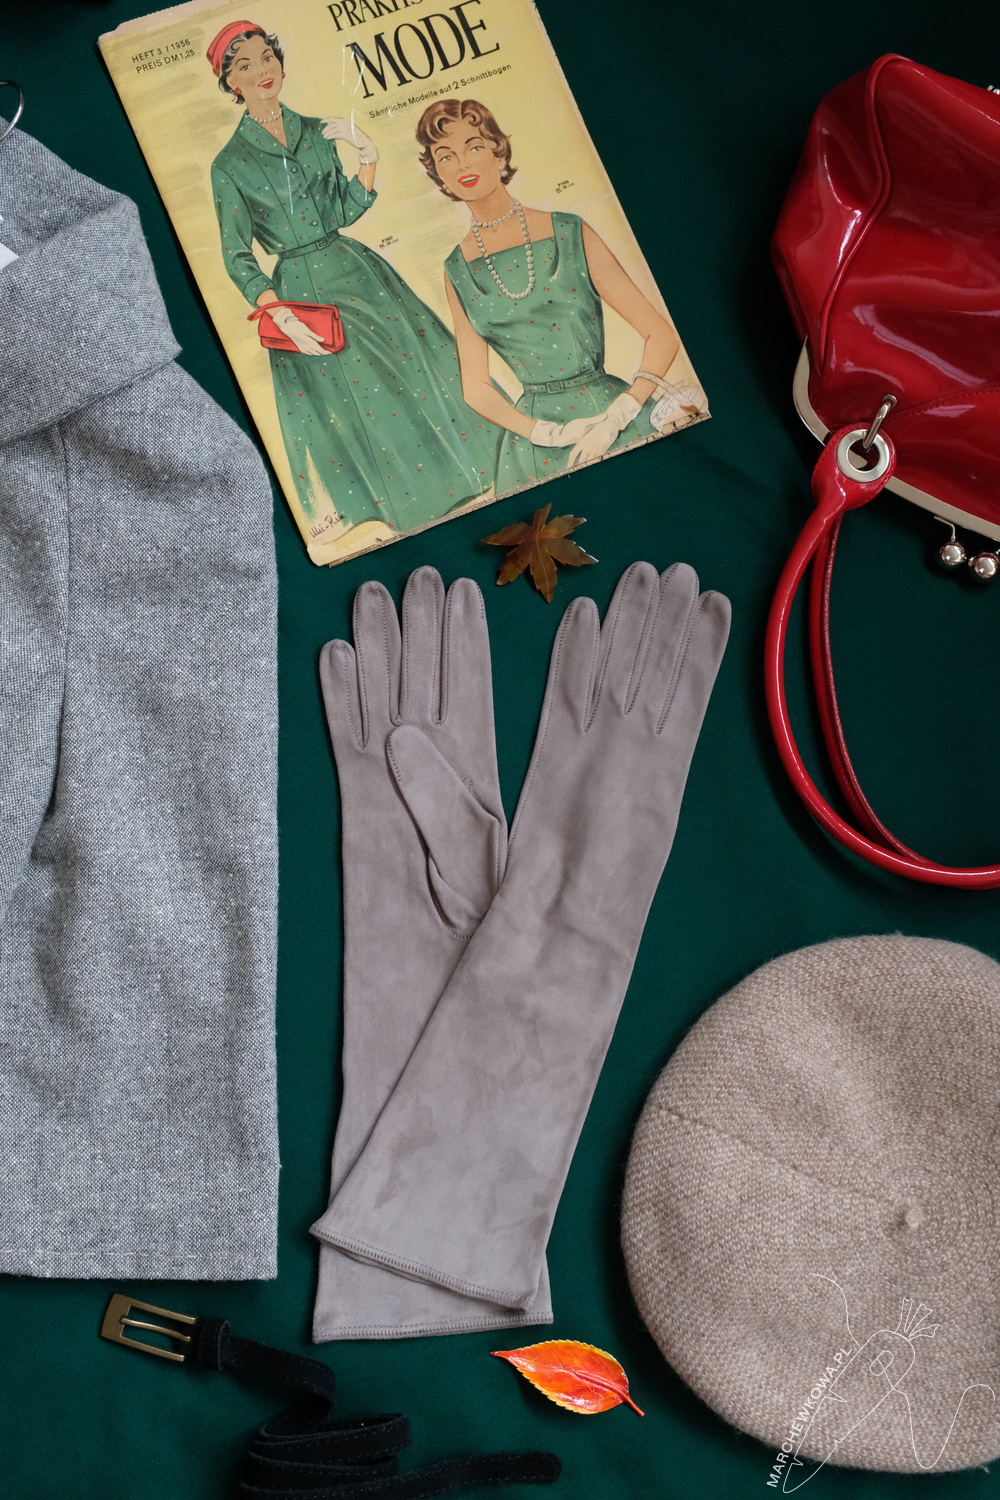 rękawiczki, T. Kowalski, Ko-Moda, skóra koźlęca, retro styl, lata '50.